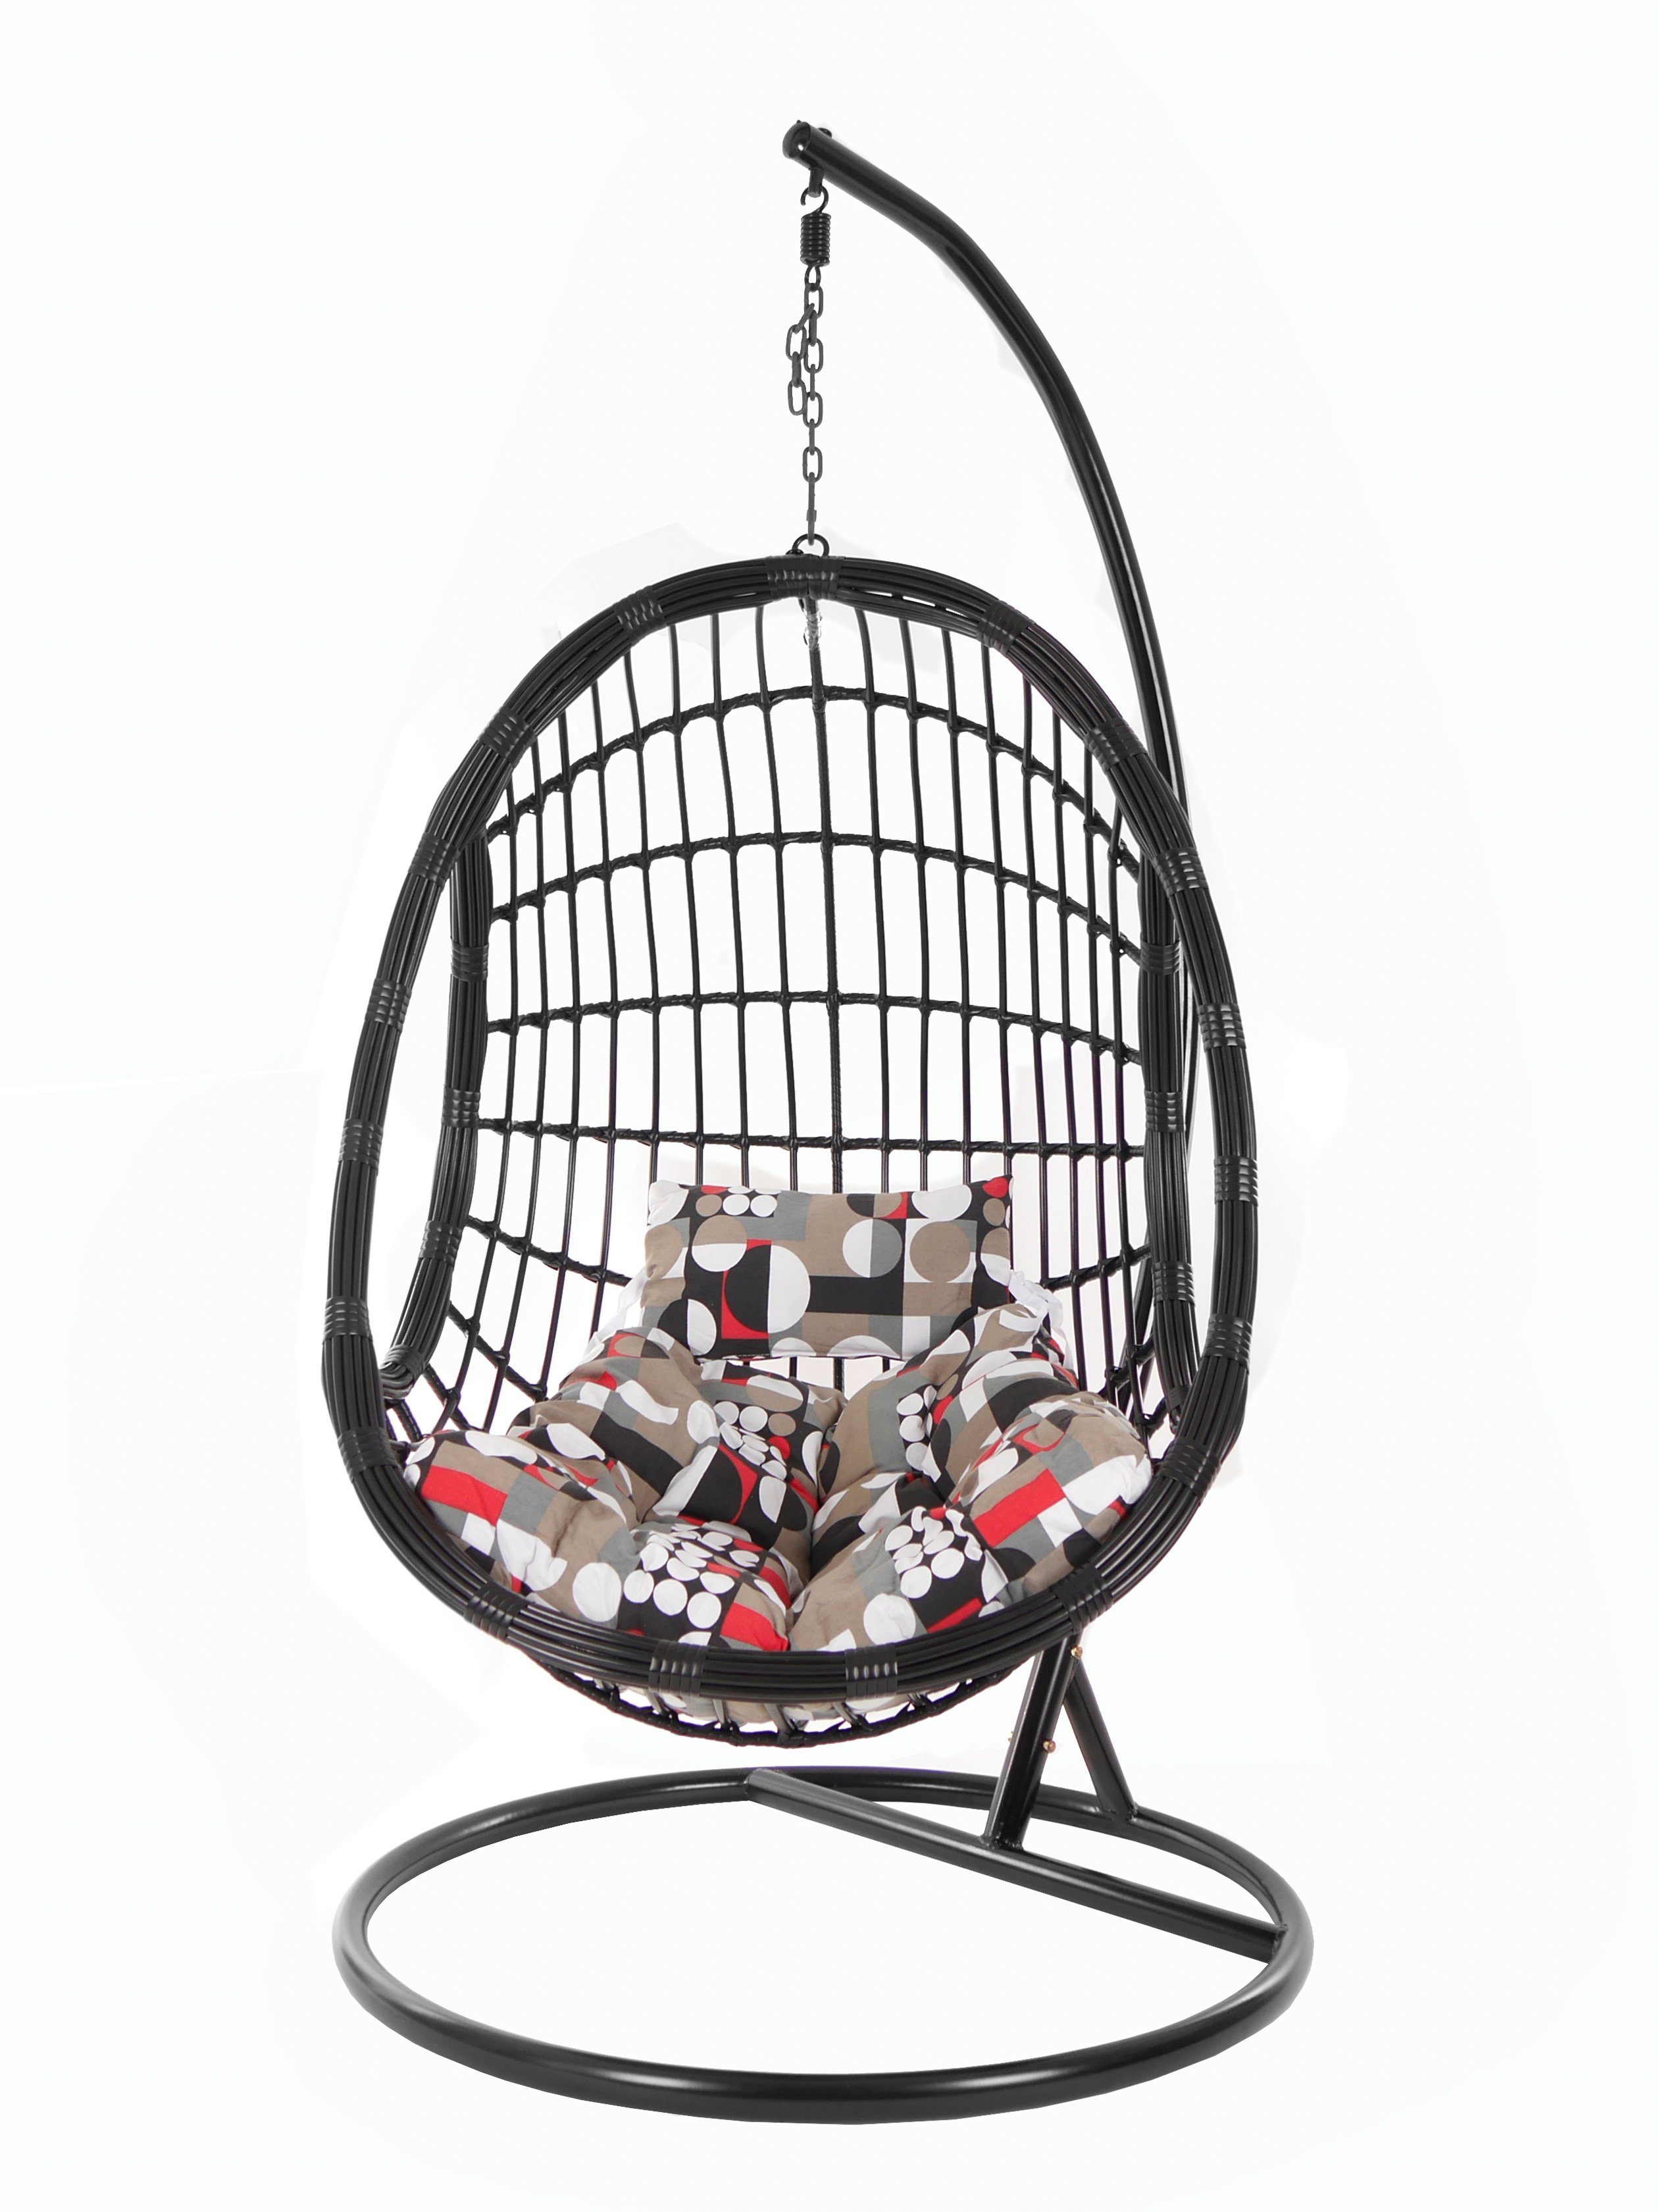 Design KIDEO Swing PALMANOVA black, (7390 Hängesessel sand) Chair, Hängesessel circle in edles Loungemöbel, schwarz, gemustert Kissen, und mit Gestell Schwebesessel, the